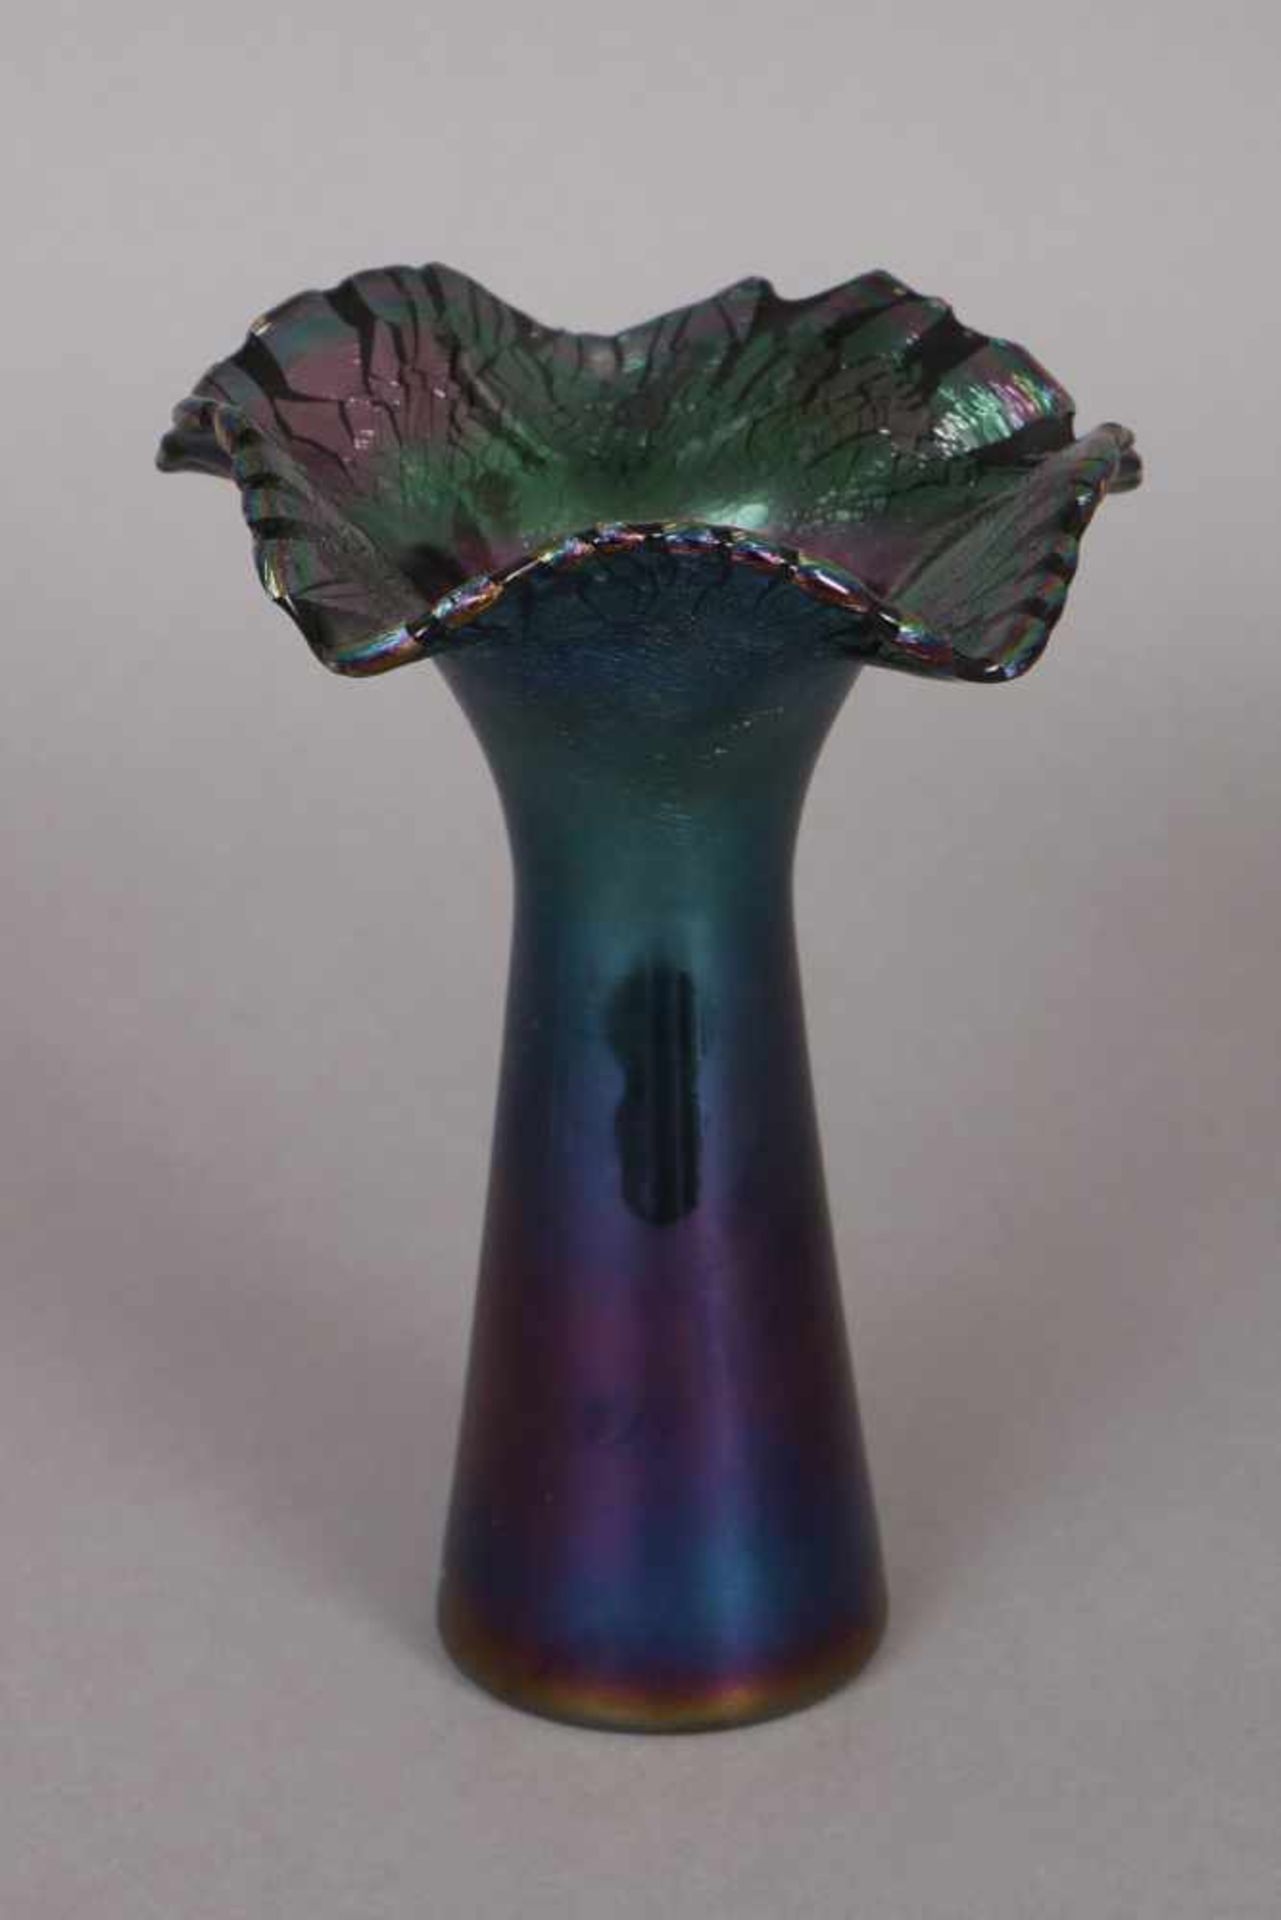 Jugendstil Vase violett-grün irisierendes und lüstrierendes Glas, teilweise craqueliert, weit - Image 2 of 2